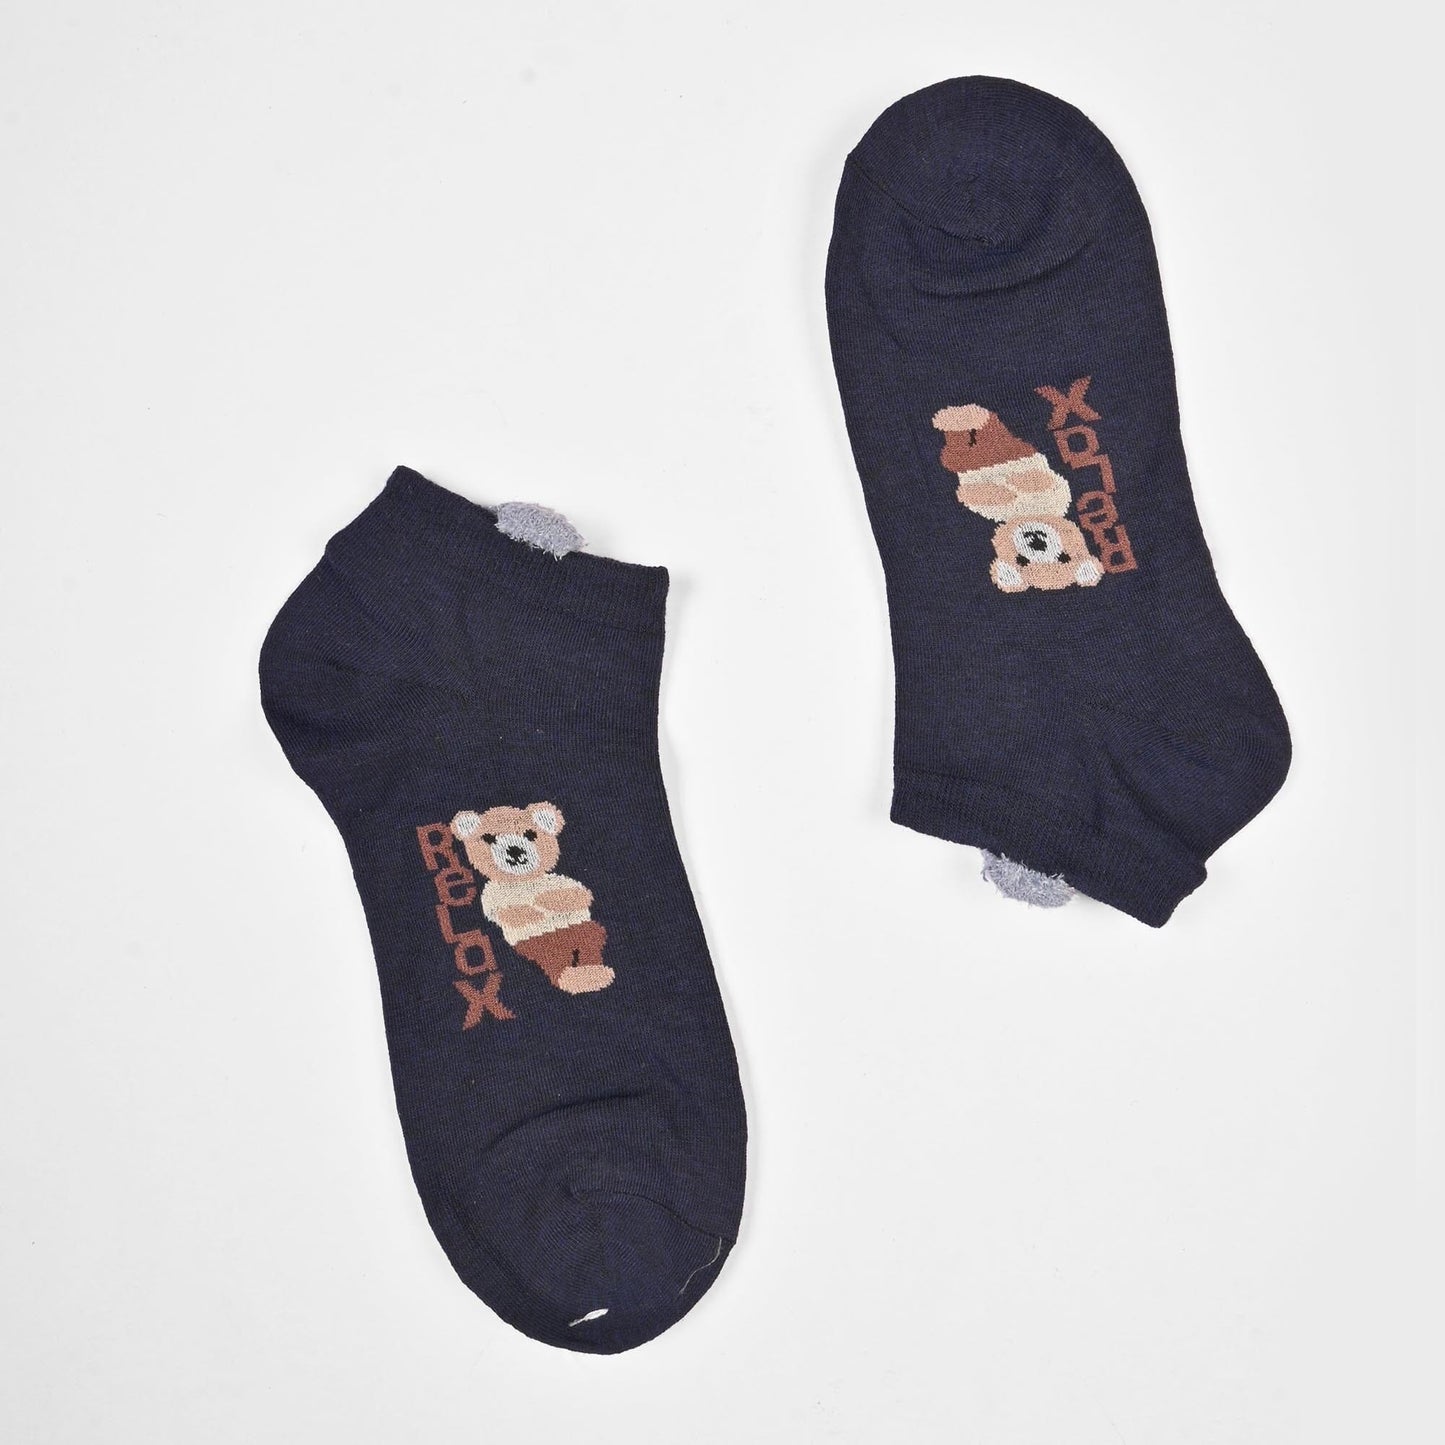 Fashion Women's Herstal Design Anklet Socks Socks SRL Navy D1 EUR 35-40